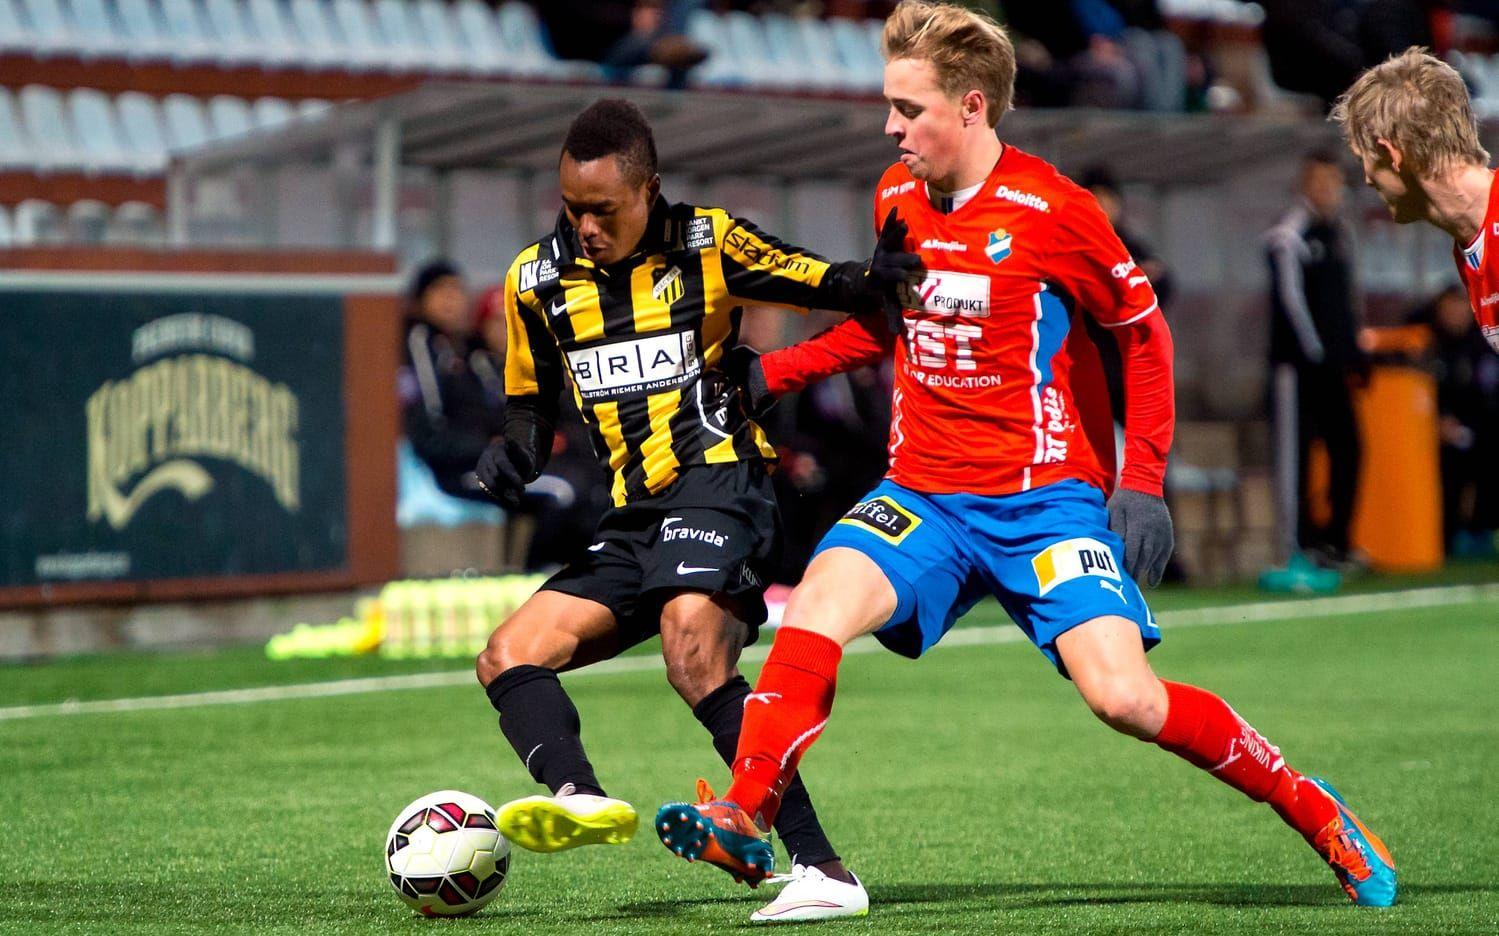 Under 2015 och 2016 har Robin Strömberg spelat i Östers IF. Här i en cupmatch mot Häcken. Bild: Bildbyrån